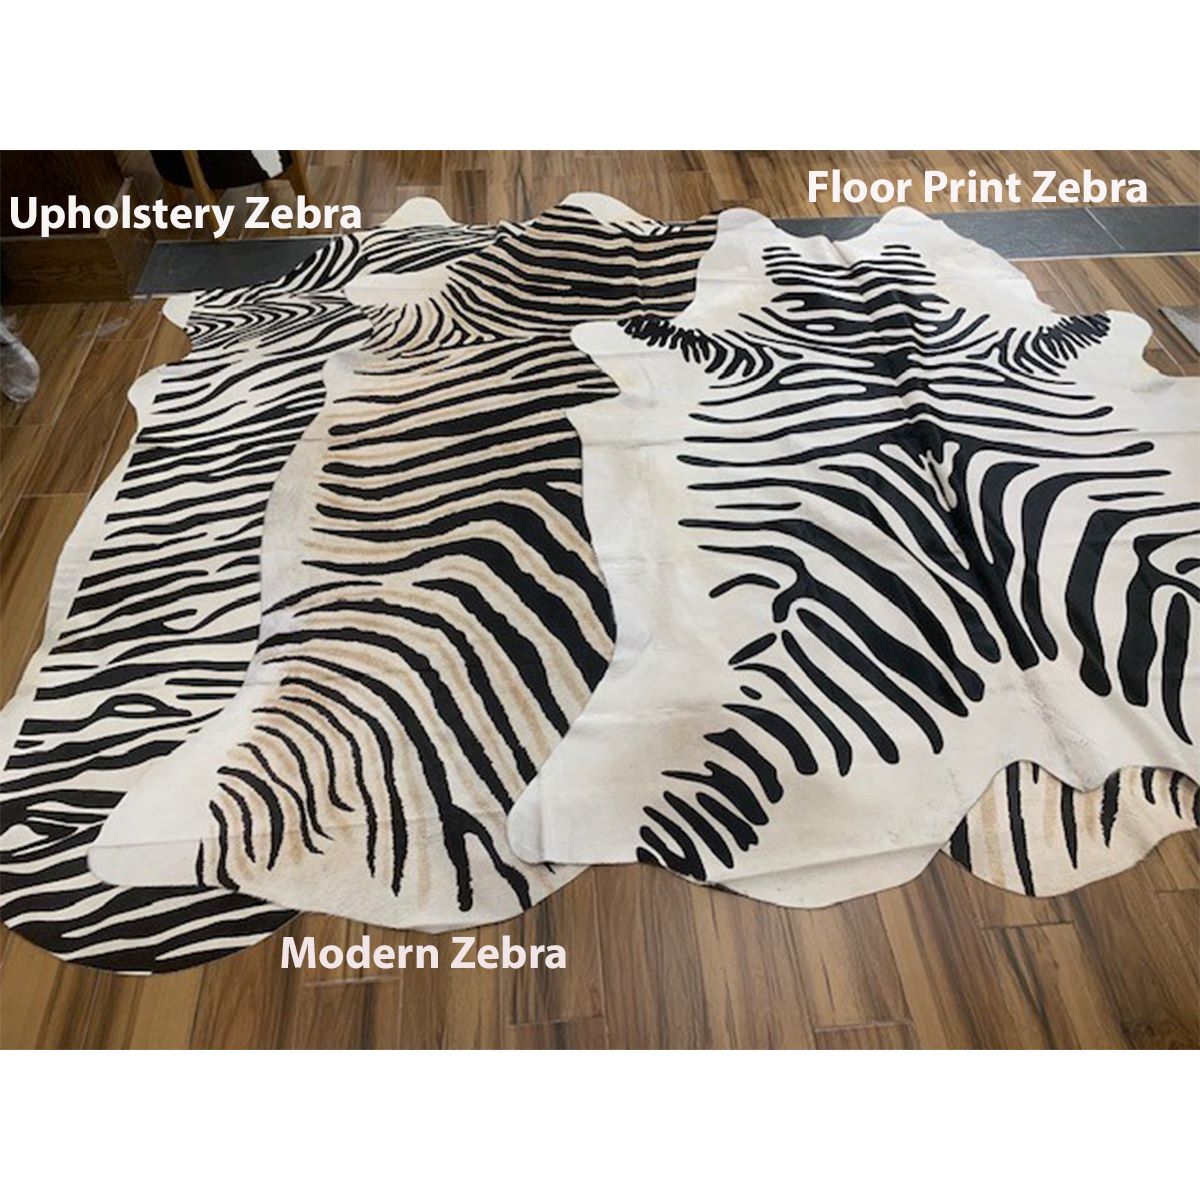 Floor Print Zebra